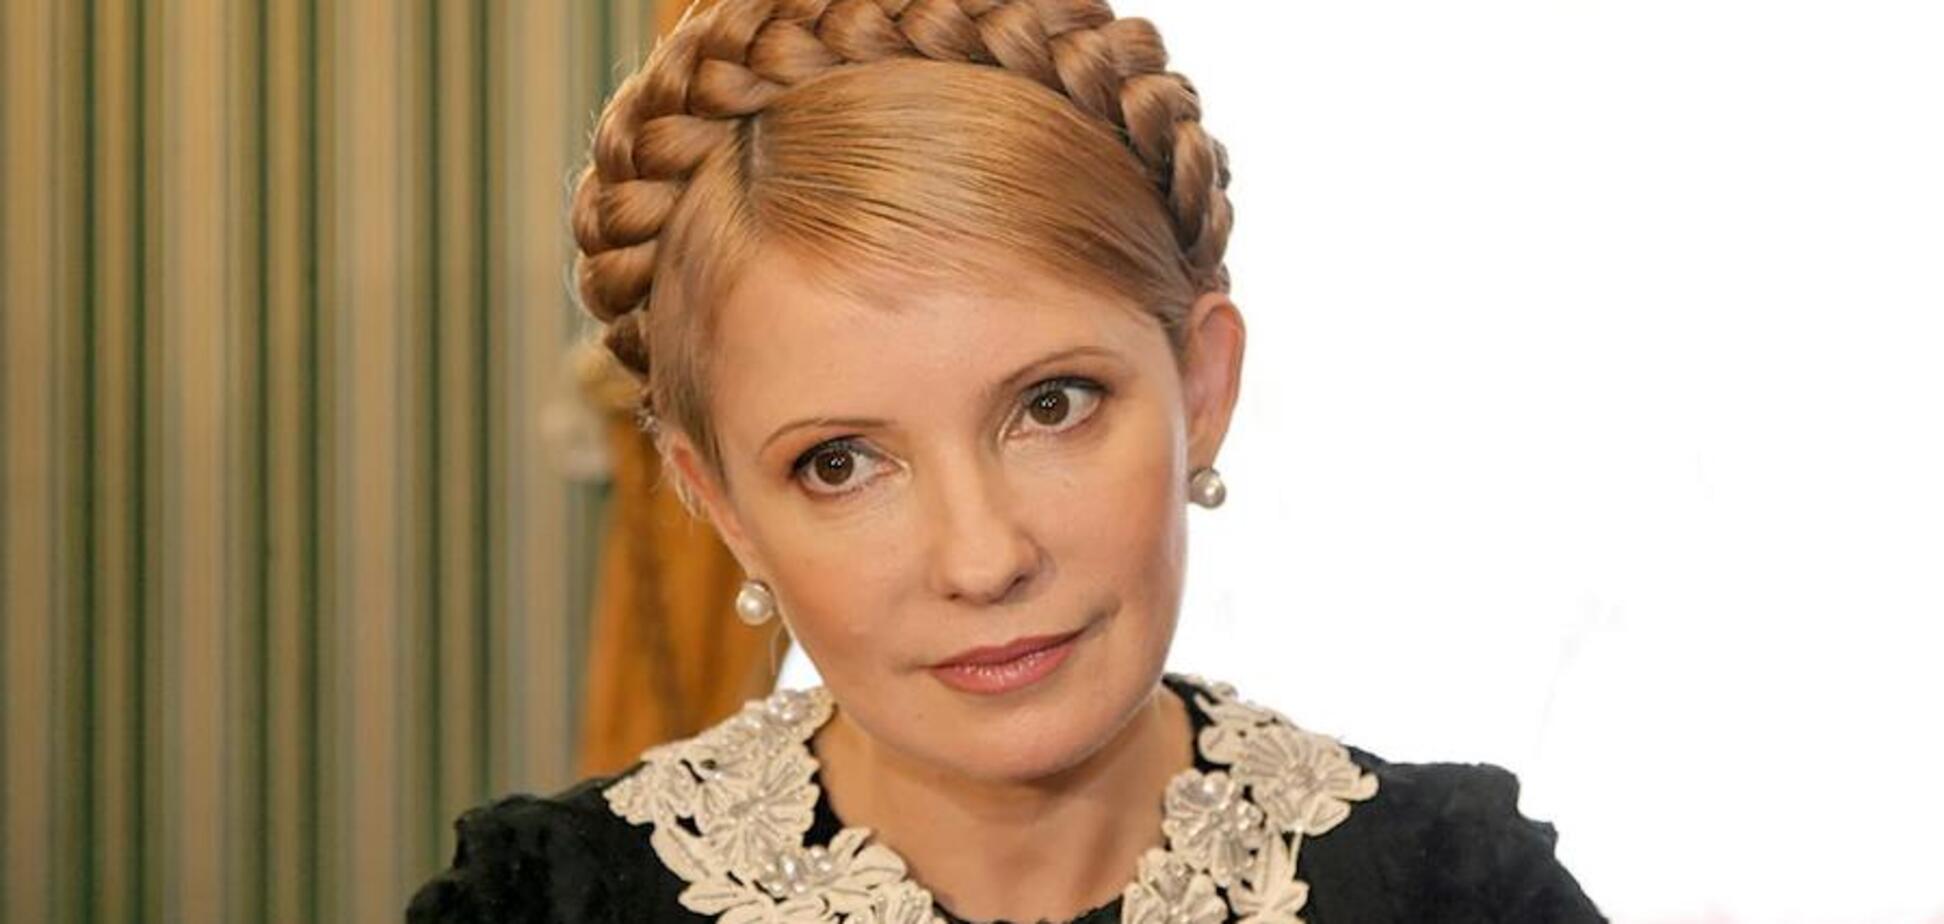 Тимошенко пообещала снизить тарифы на газ, если станет президентом